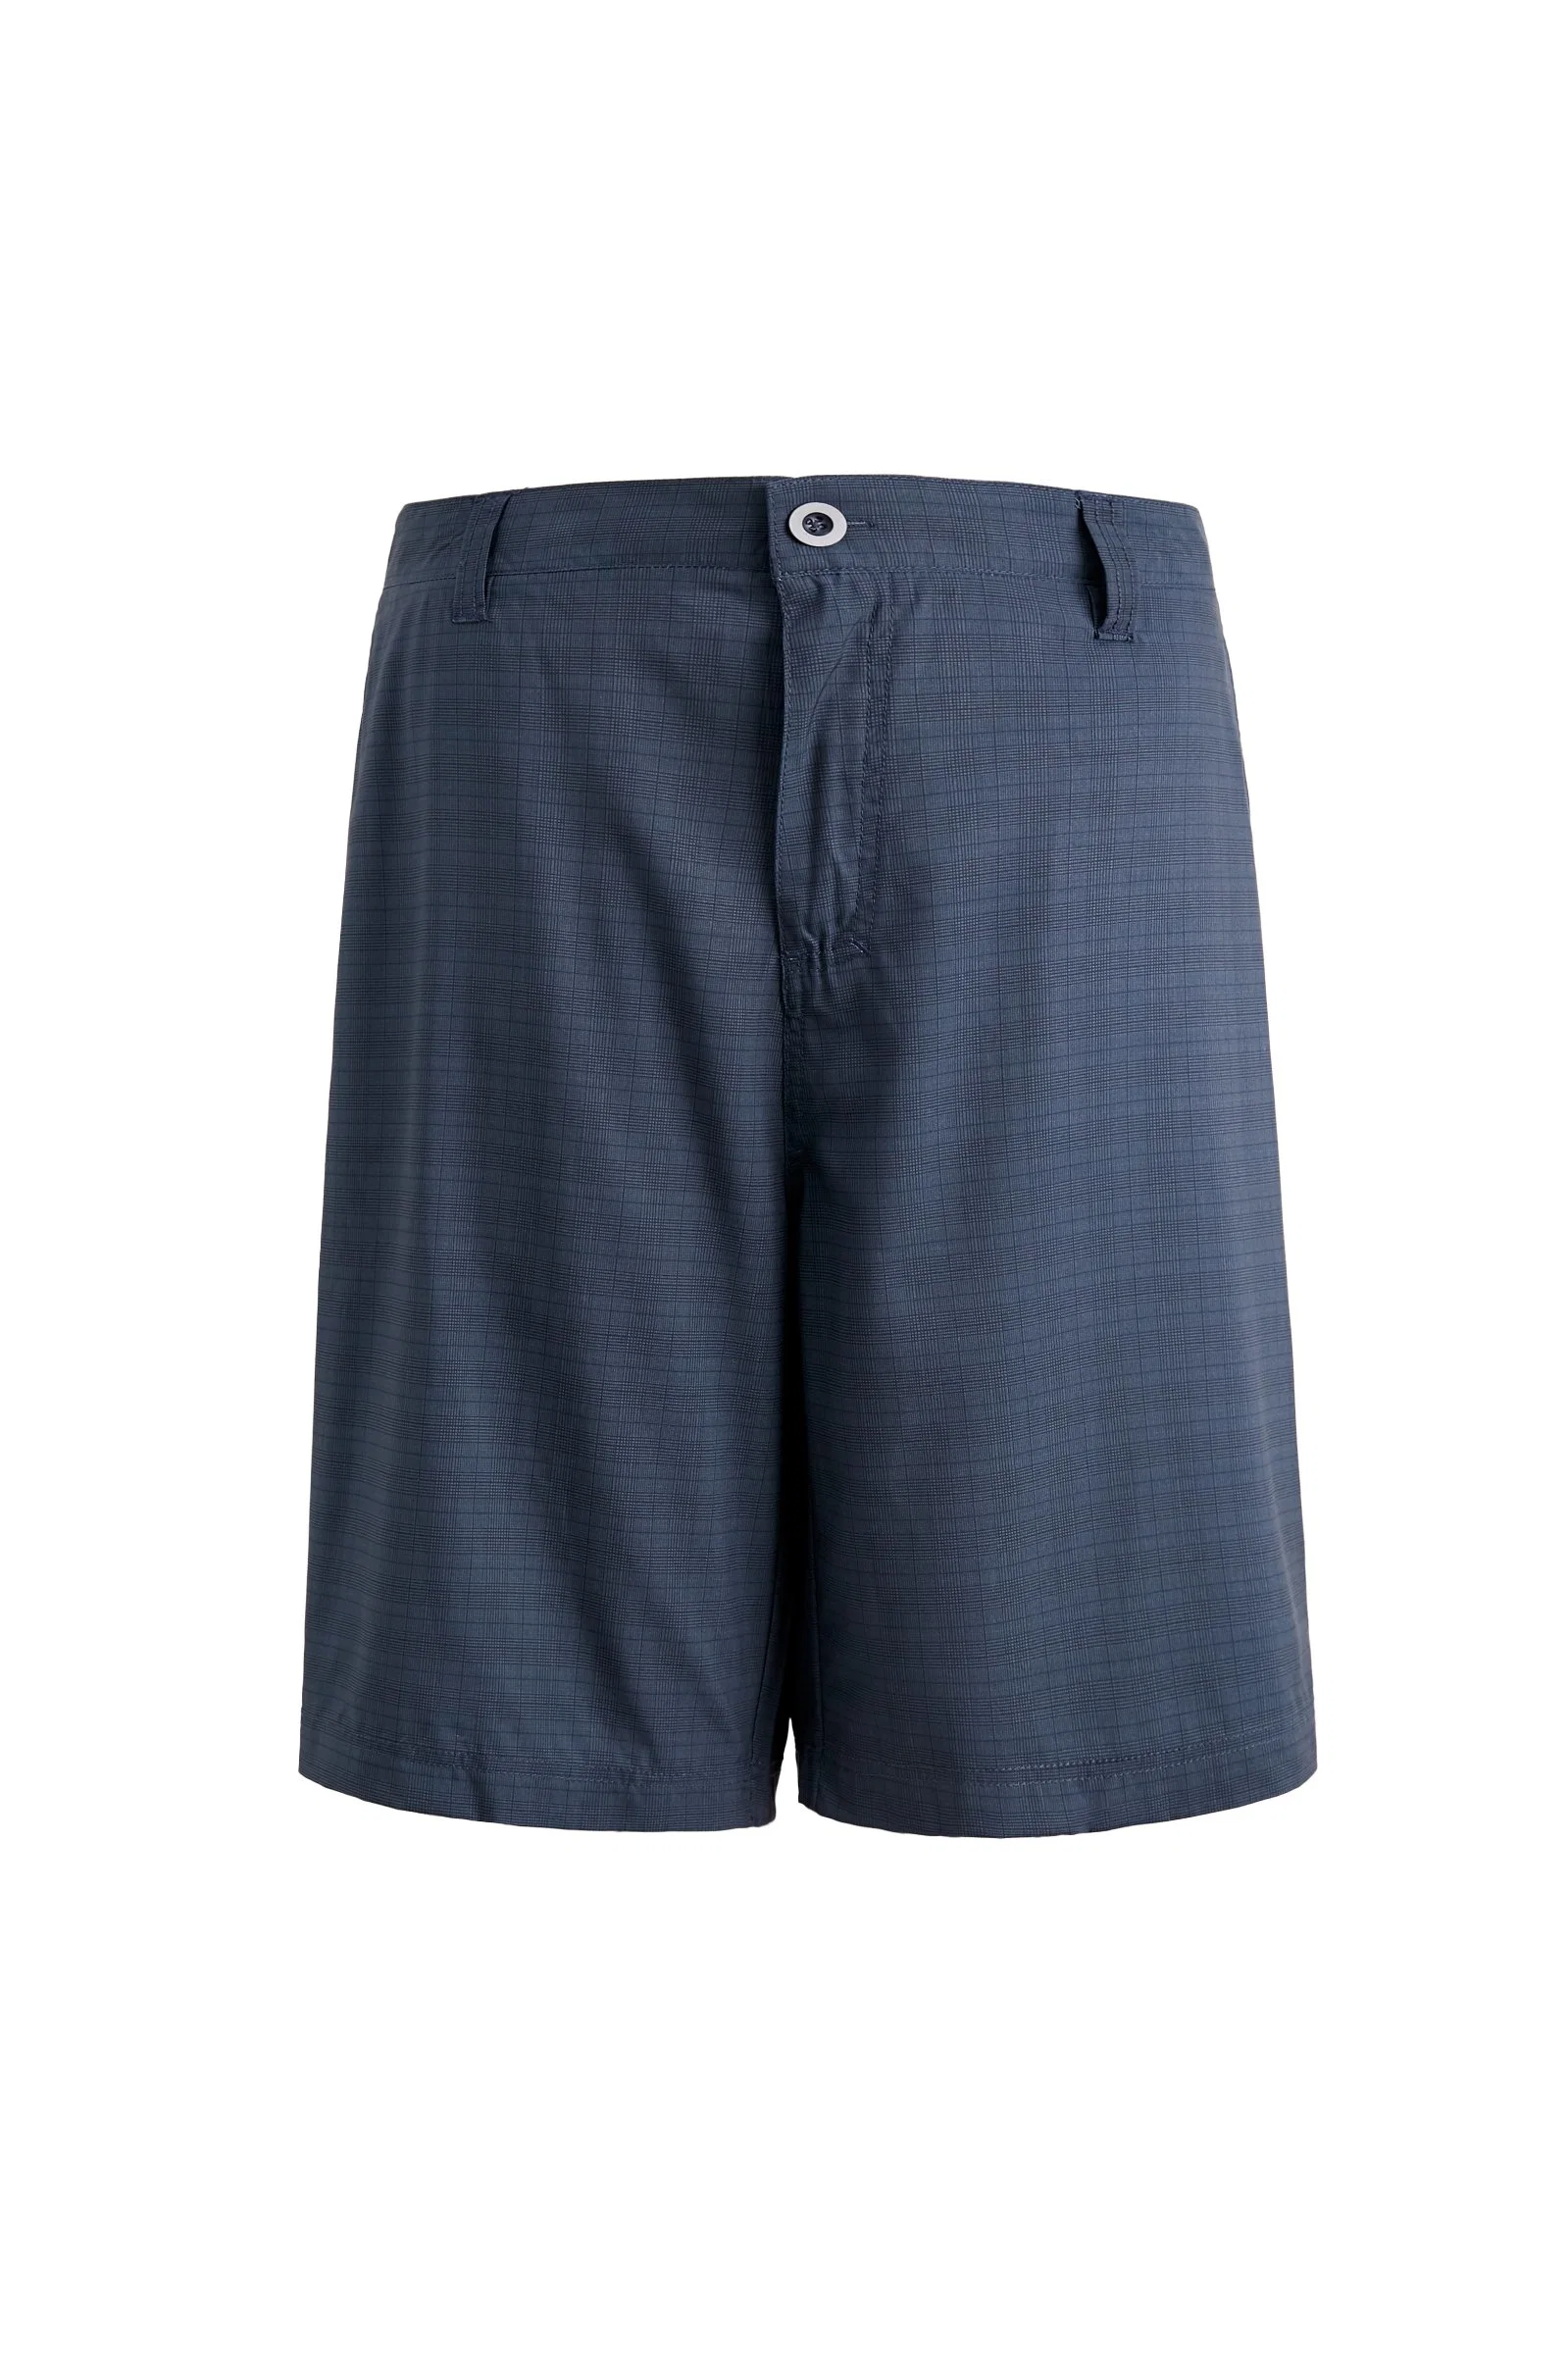 Homens calça curta a qualidade alta moda elegante Personalizado Zipper Pocket Style Sport Athletic Curto